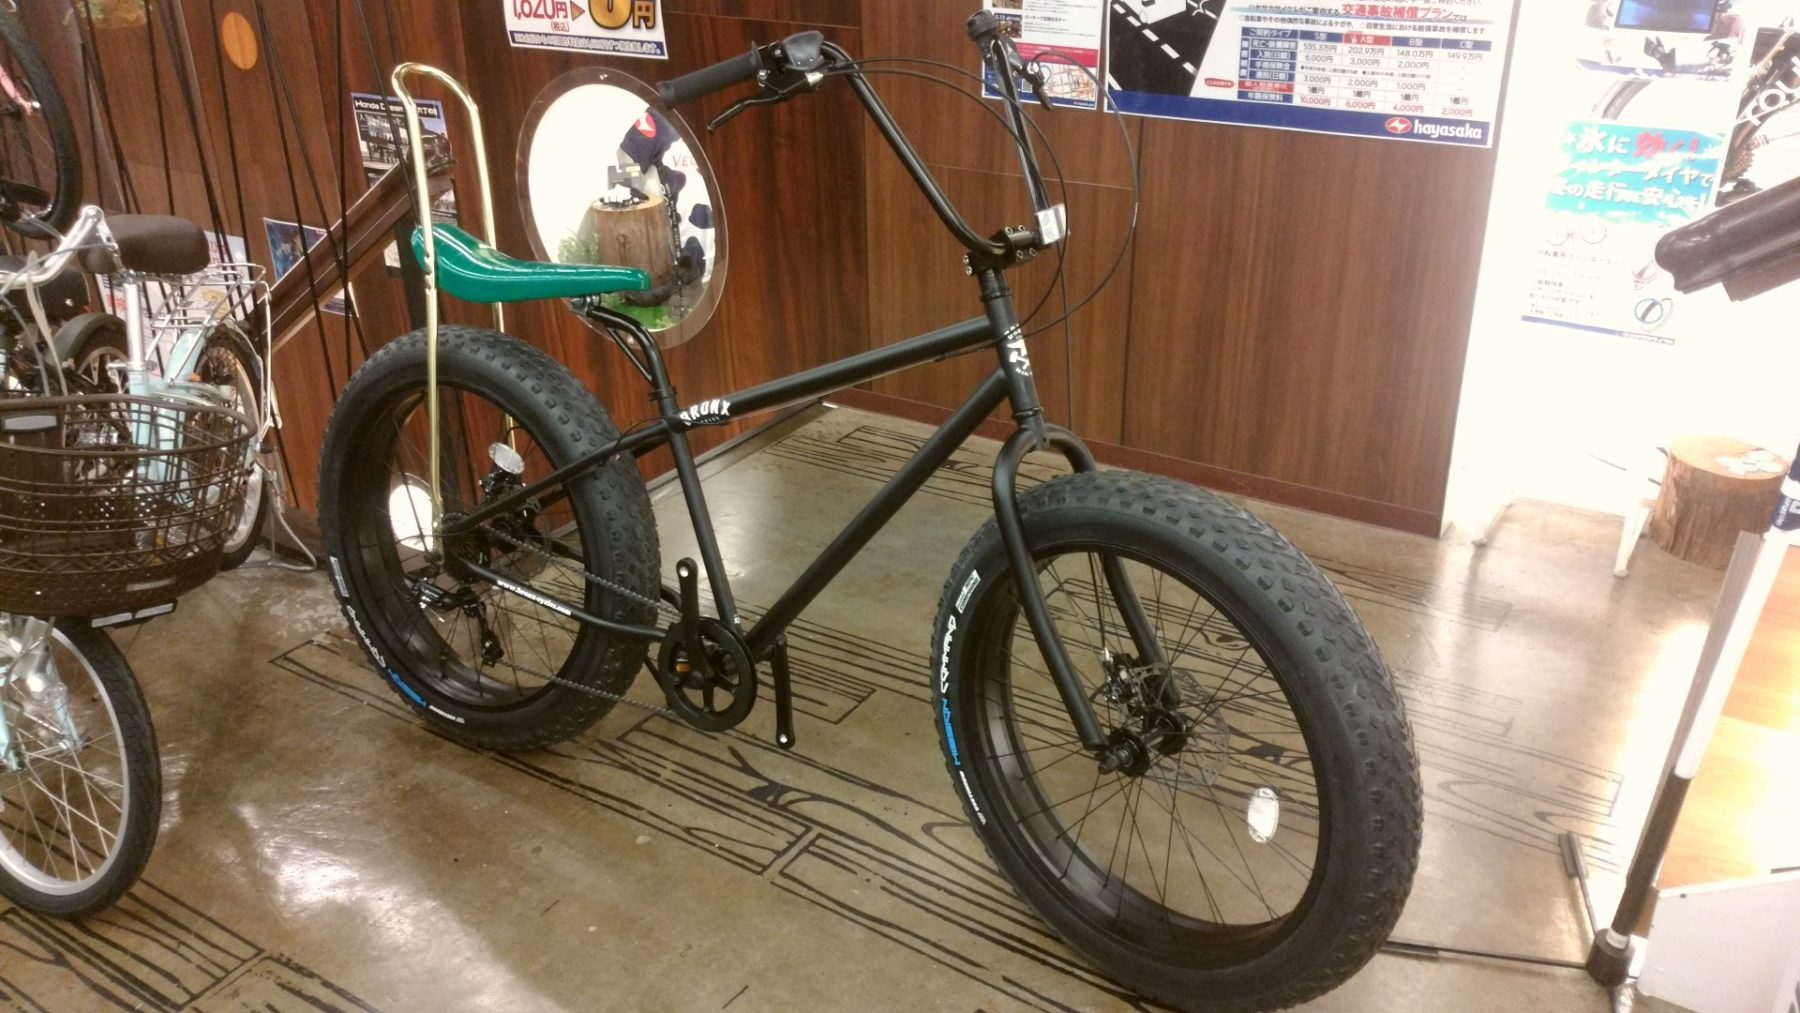 カスタム企画第2弾 ファットバイク編 バイク 自転車の購入修理ならハヤサカサイクル